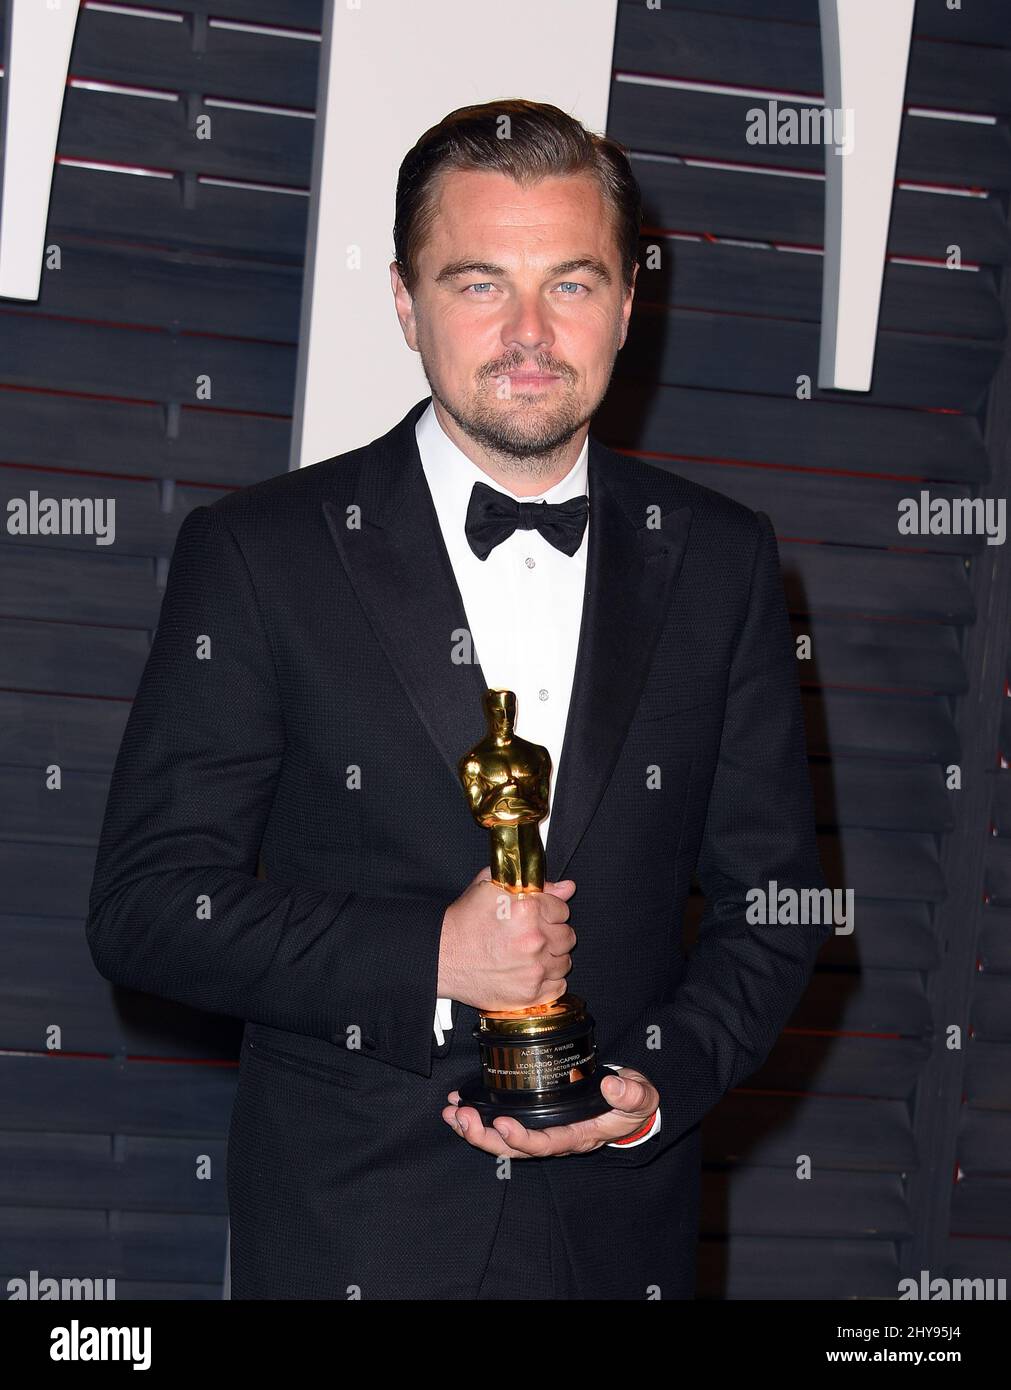 Leonardo DiCaprio participe à la Vanity Fair Oscar Party 2016 qui s'est tenue au Wallis Annenberg Center for the Performing Arts à Los Angeles, Californie. Banque D'Images